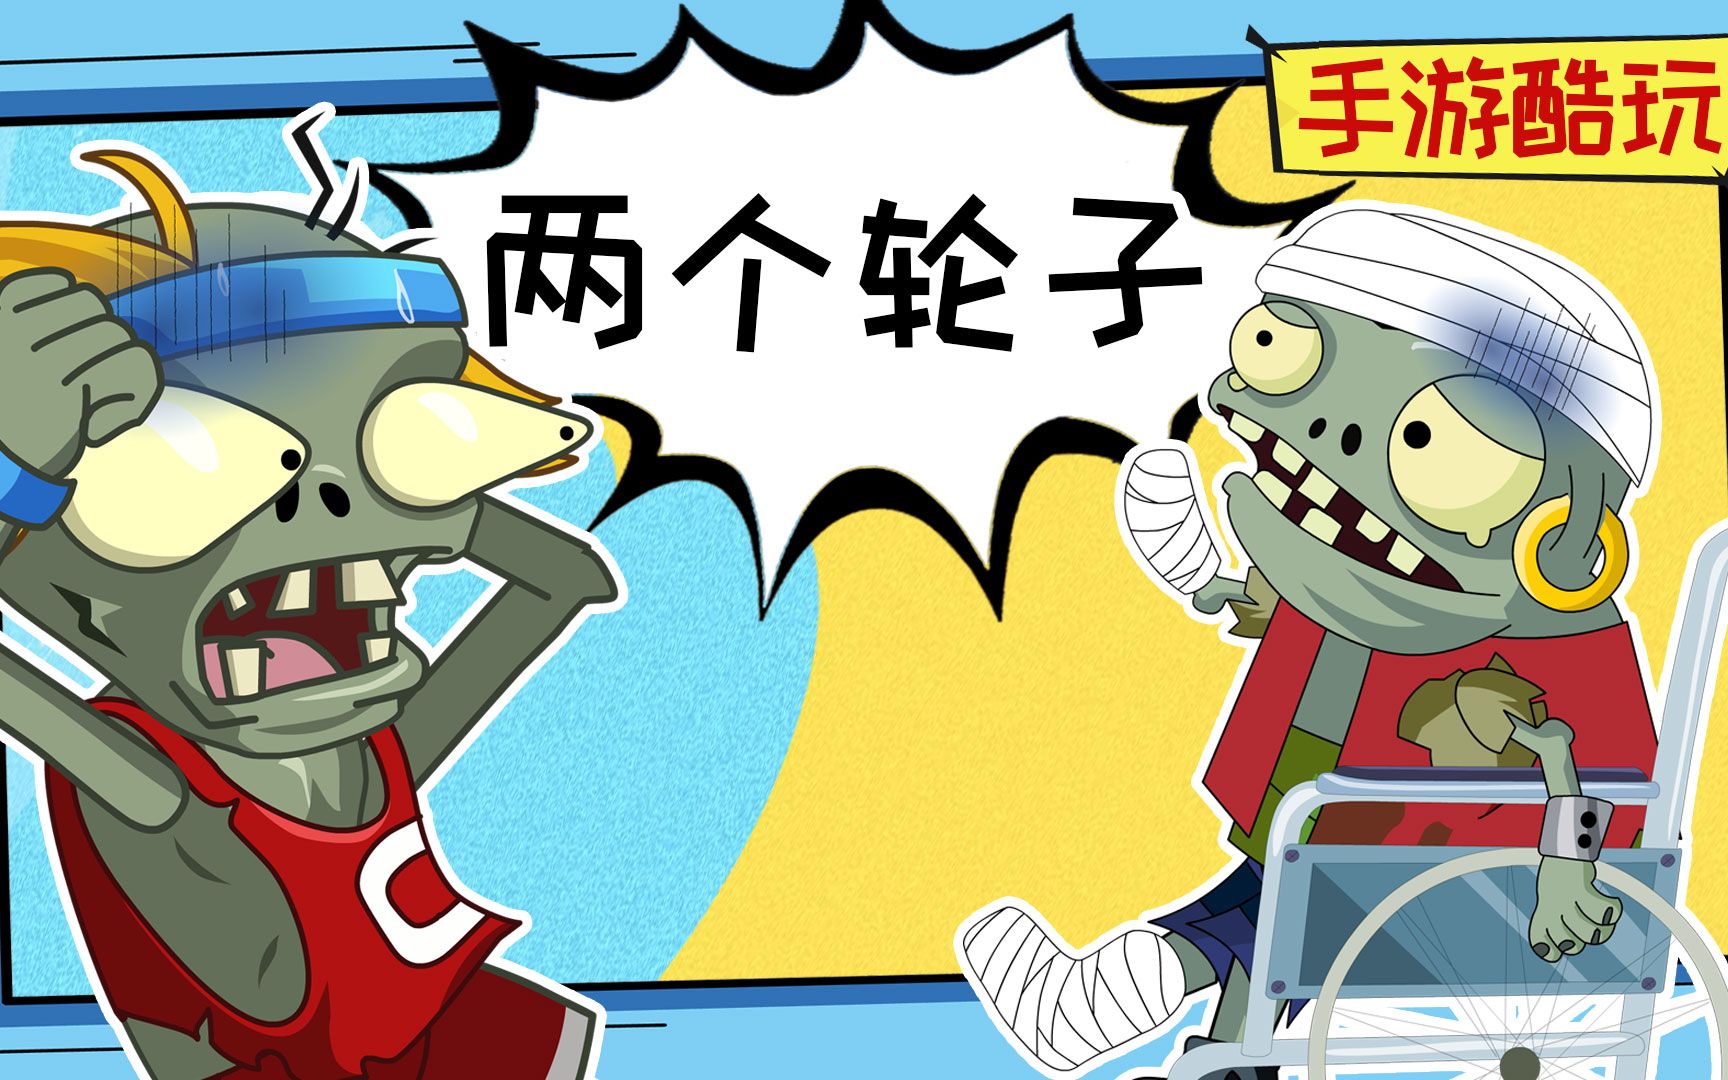 绿色僵尸小鬼头像卡通万圣节派对中文海报 - 模板 - Canva可画